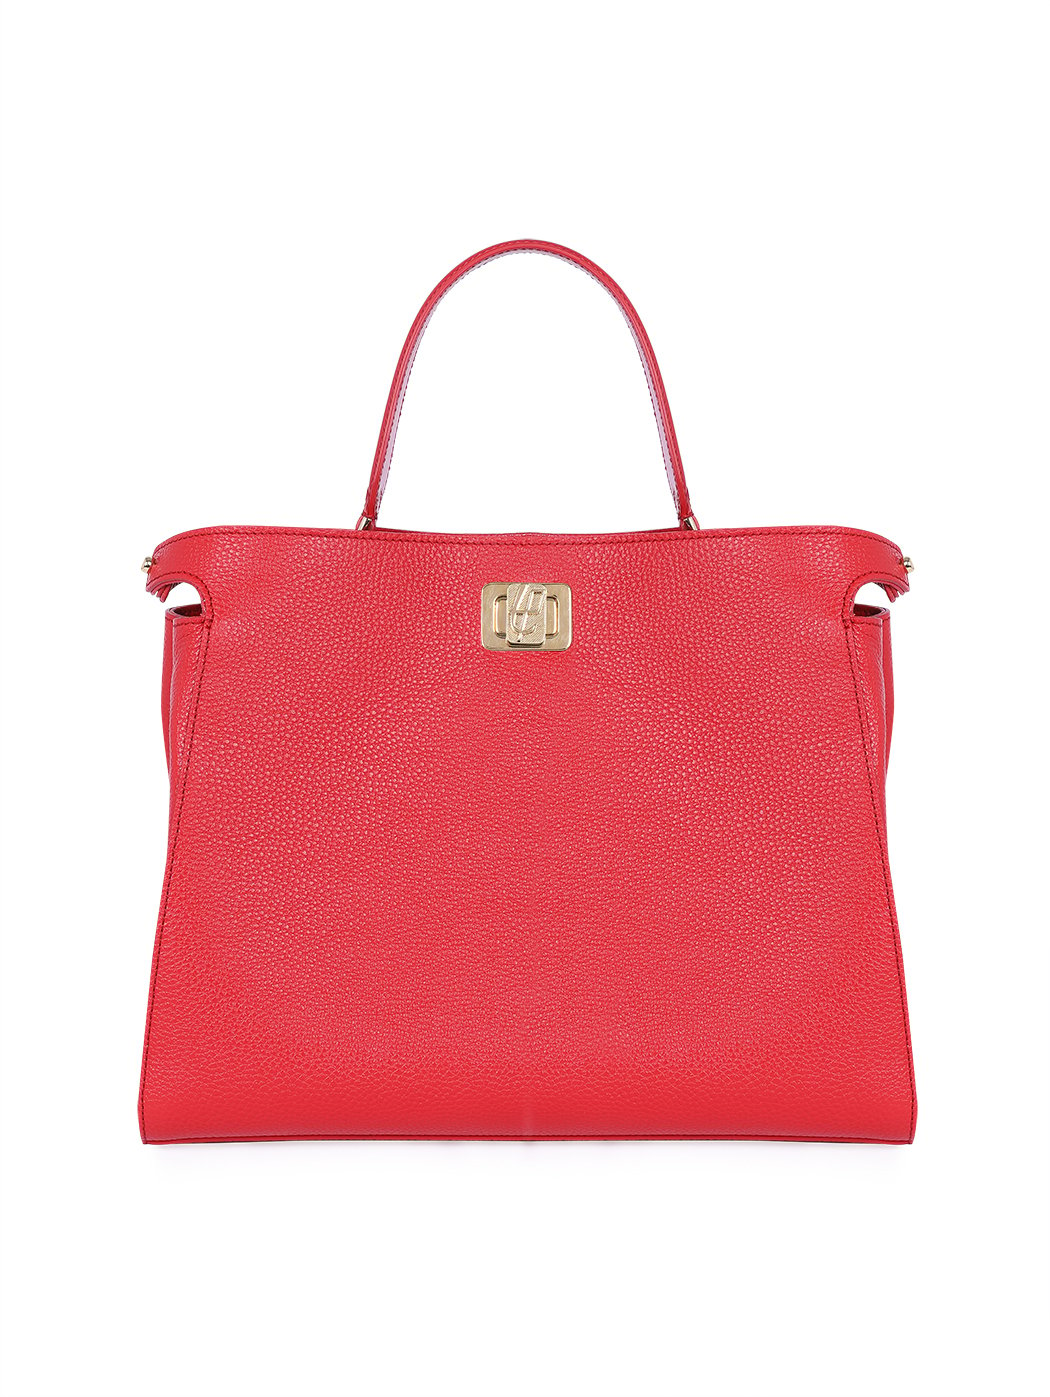 Top Handle Turnlock Handbag Rita Rose Red